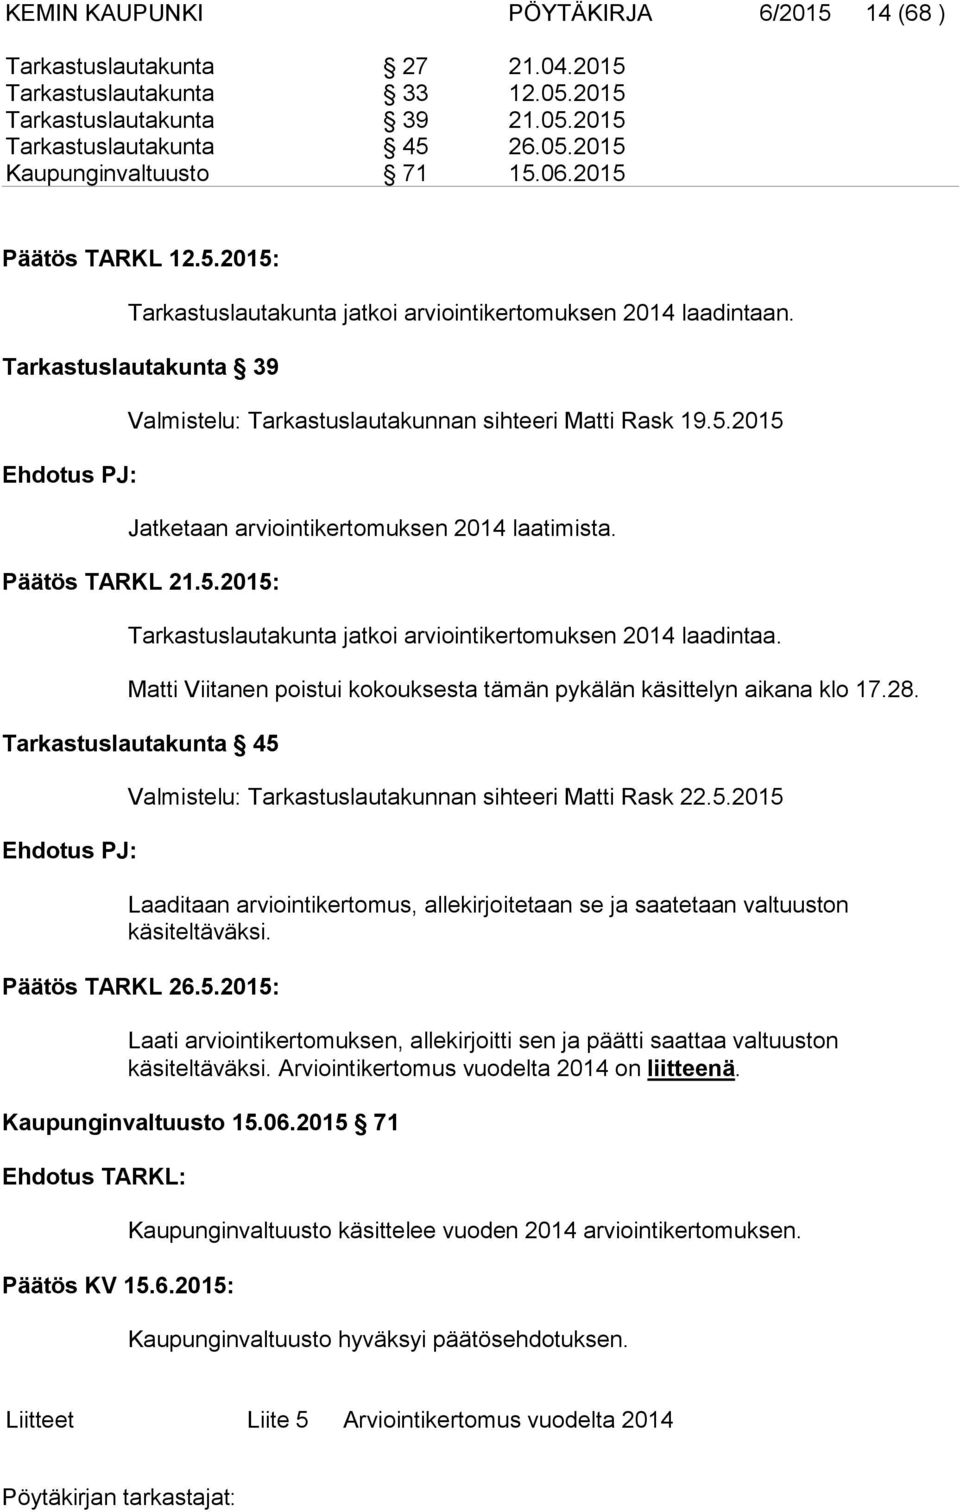 Päätös TARKL 21.5.2015: Tarkastuslautakunta jatkoi arviointikertomuksen 2014 laadintaa. Matti Viitanen poistui kokouksesta tämän pykälän käsittelyn aikana klo 17.28.